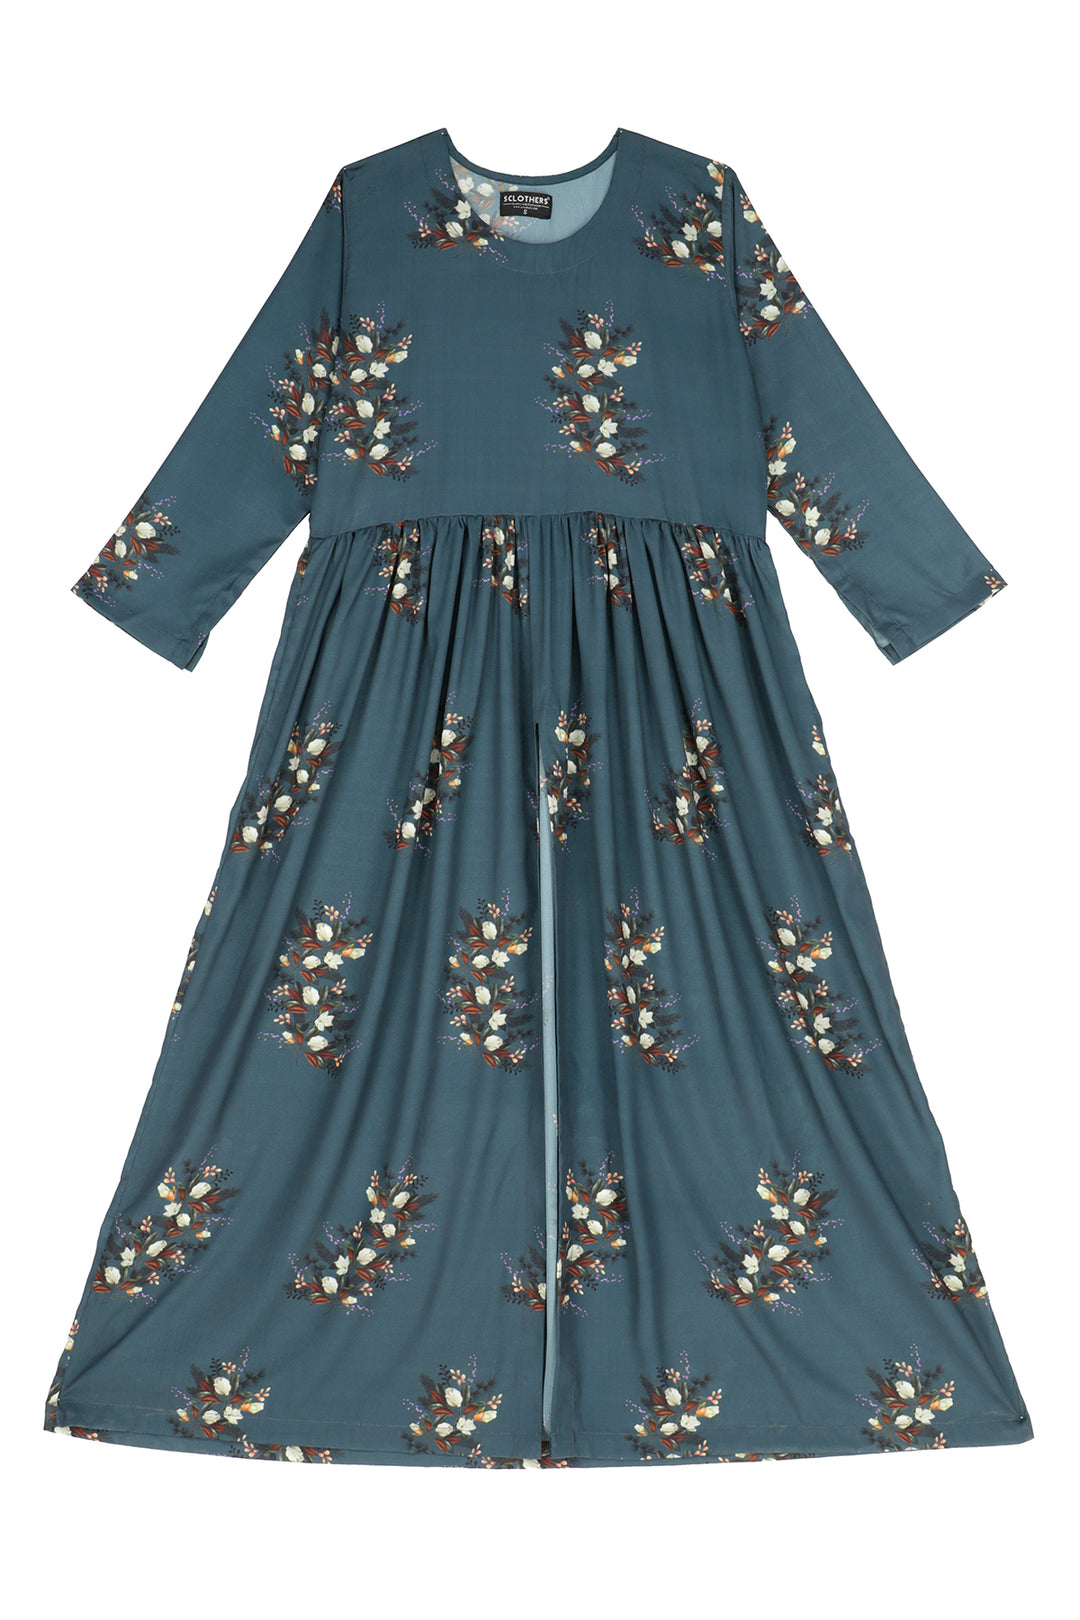 Slit Cut Floral Dress - A21 - WD00004